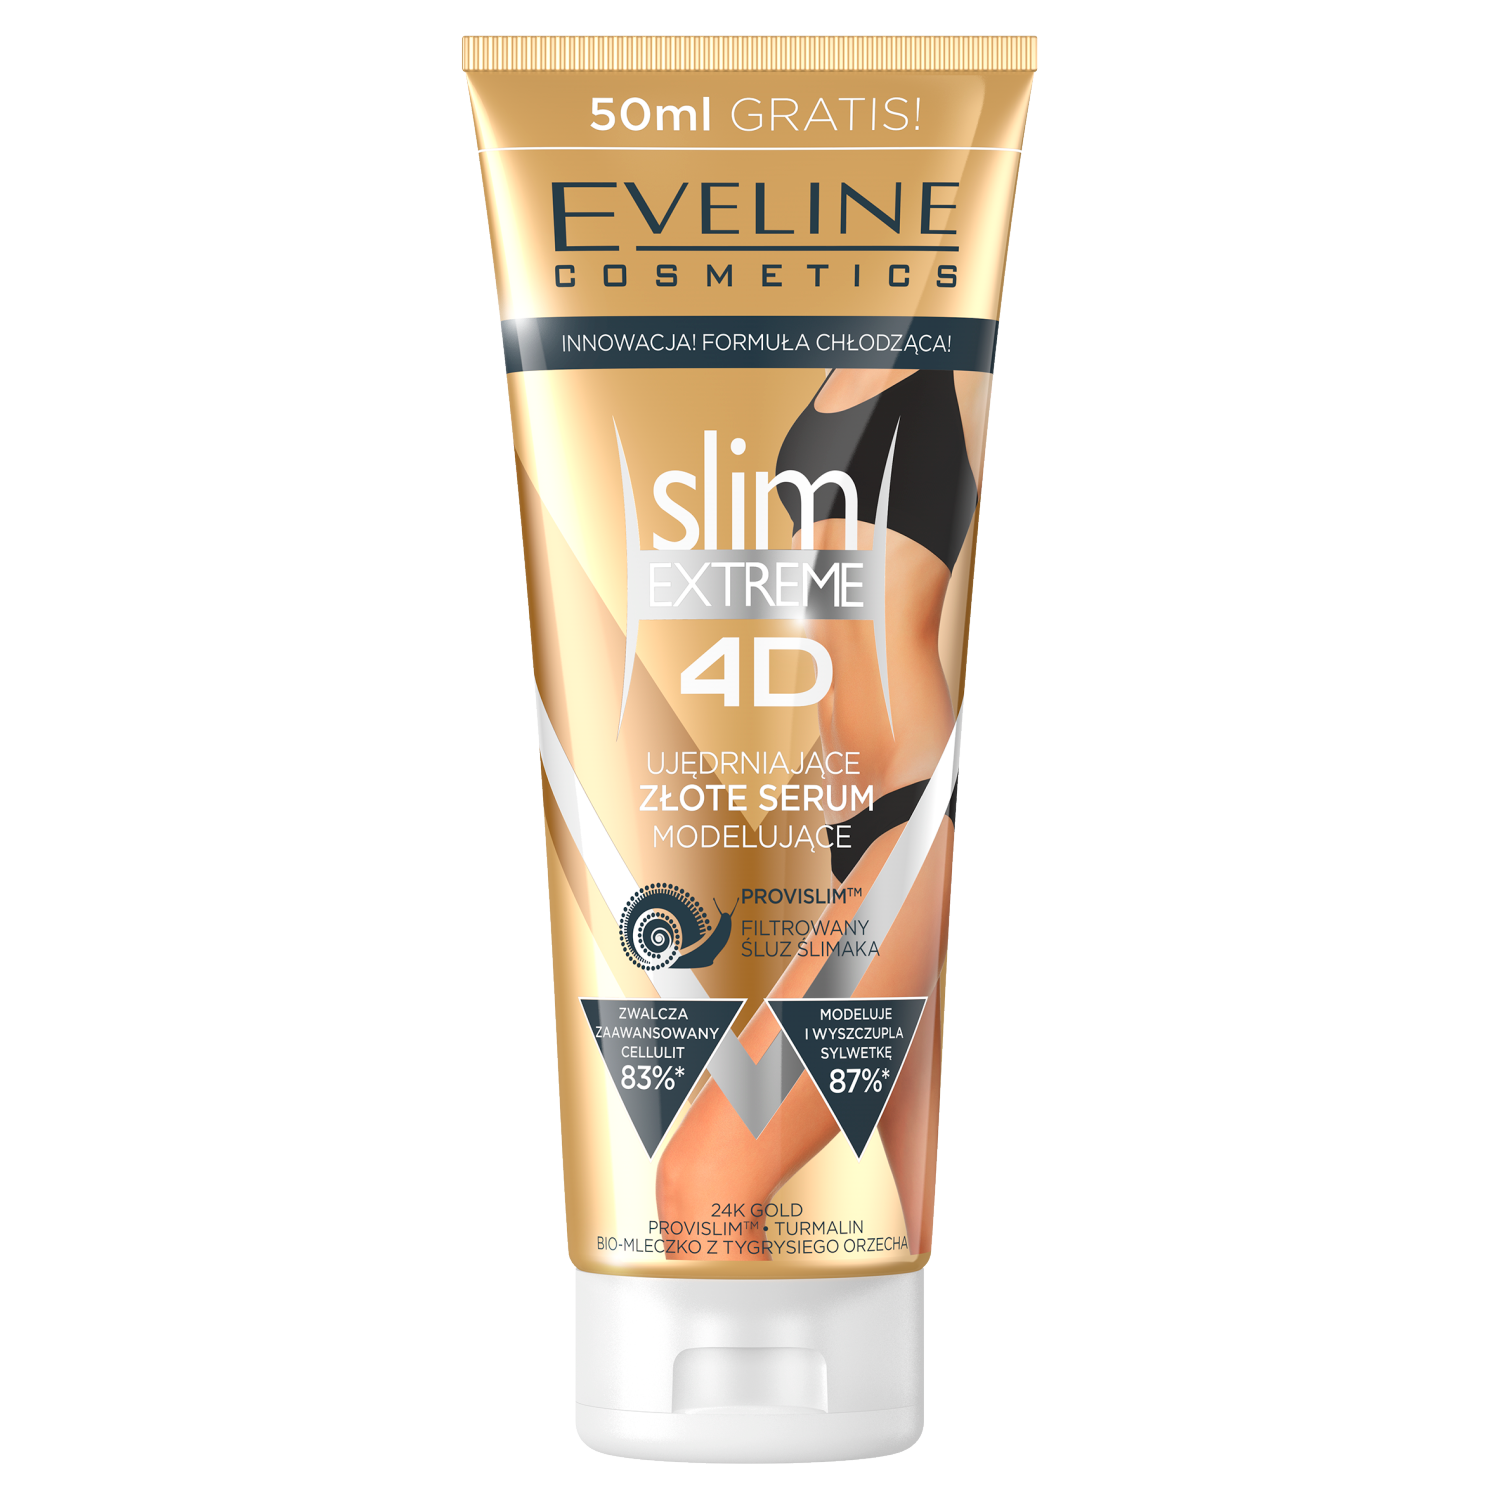 Eveline Cosmetics Slim Extreme 4 D złote serum wyszczuplająco-modelujące do  ciała, 250 ml | hebe.pl